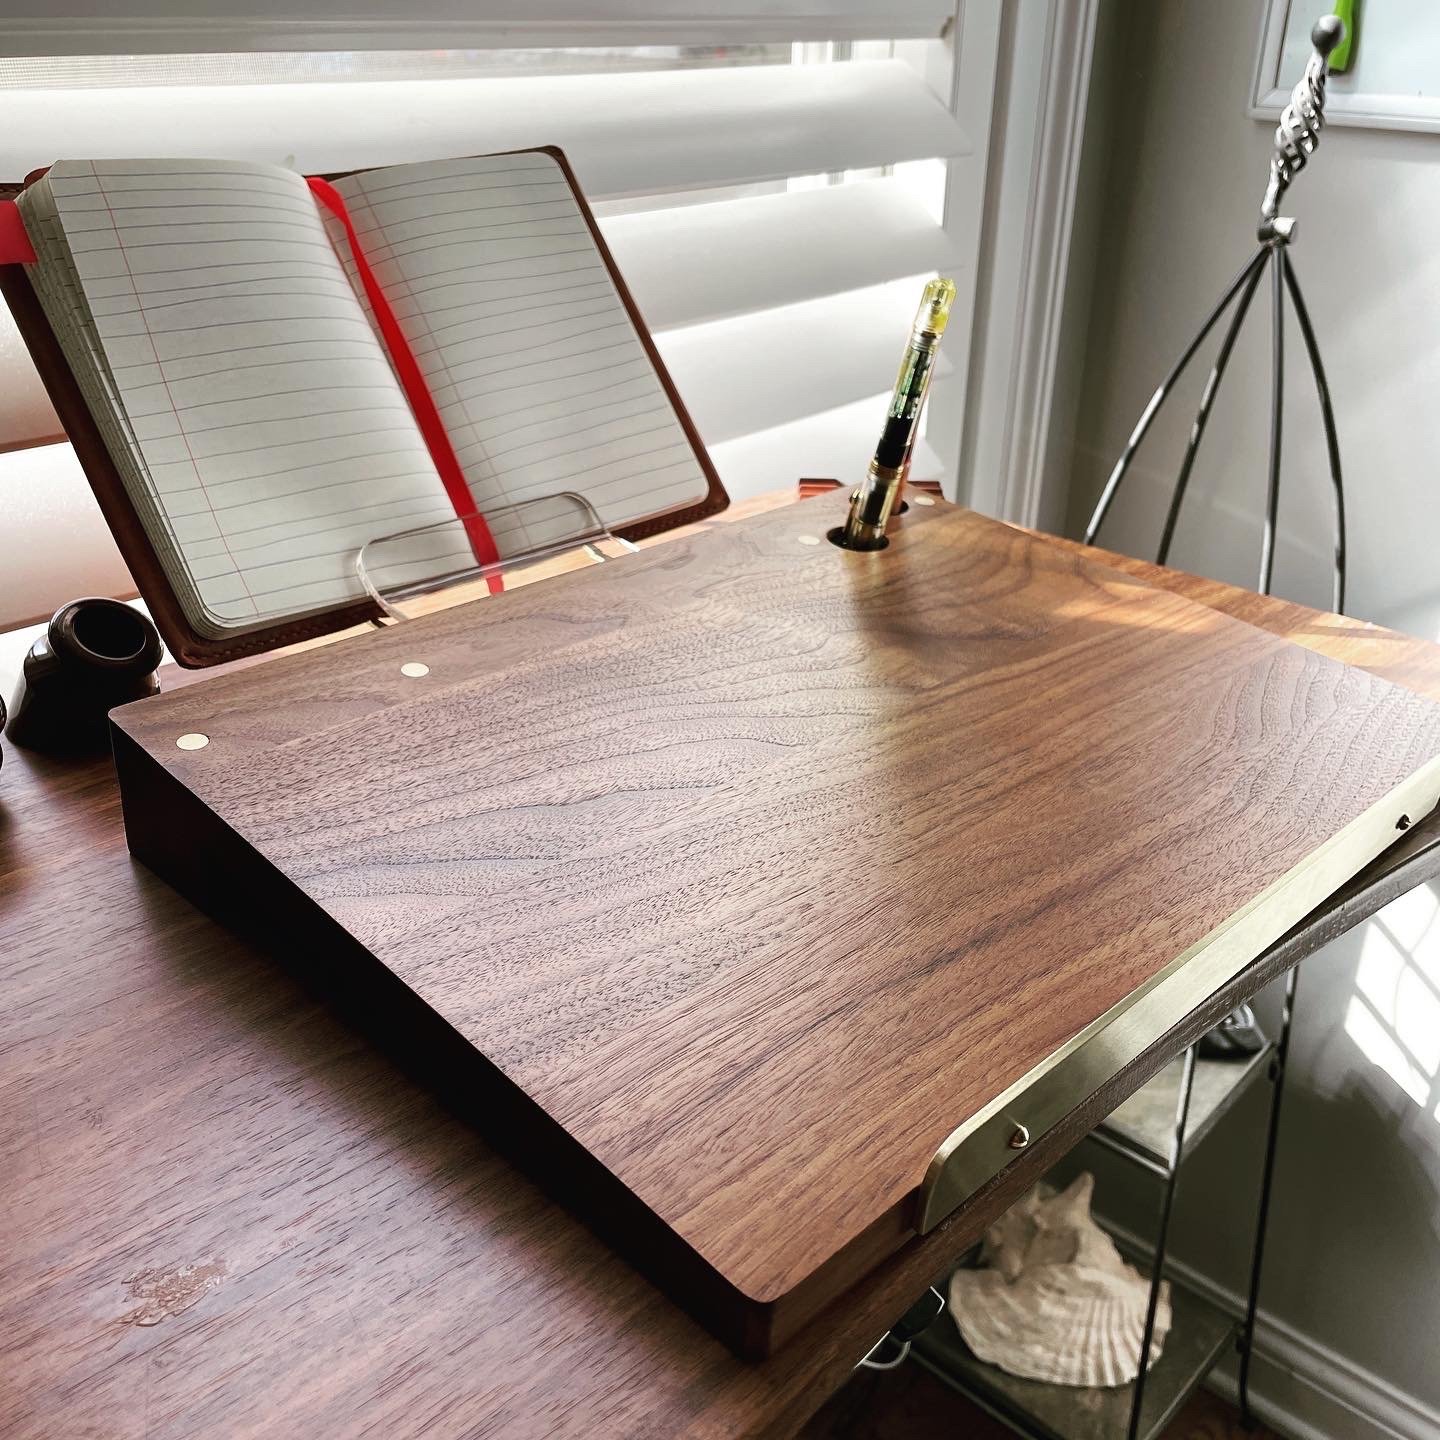 Levenger Old School Portable Lap Desk - Natural Cherry